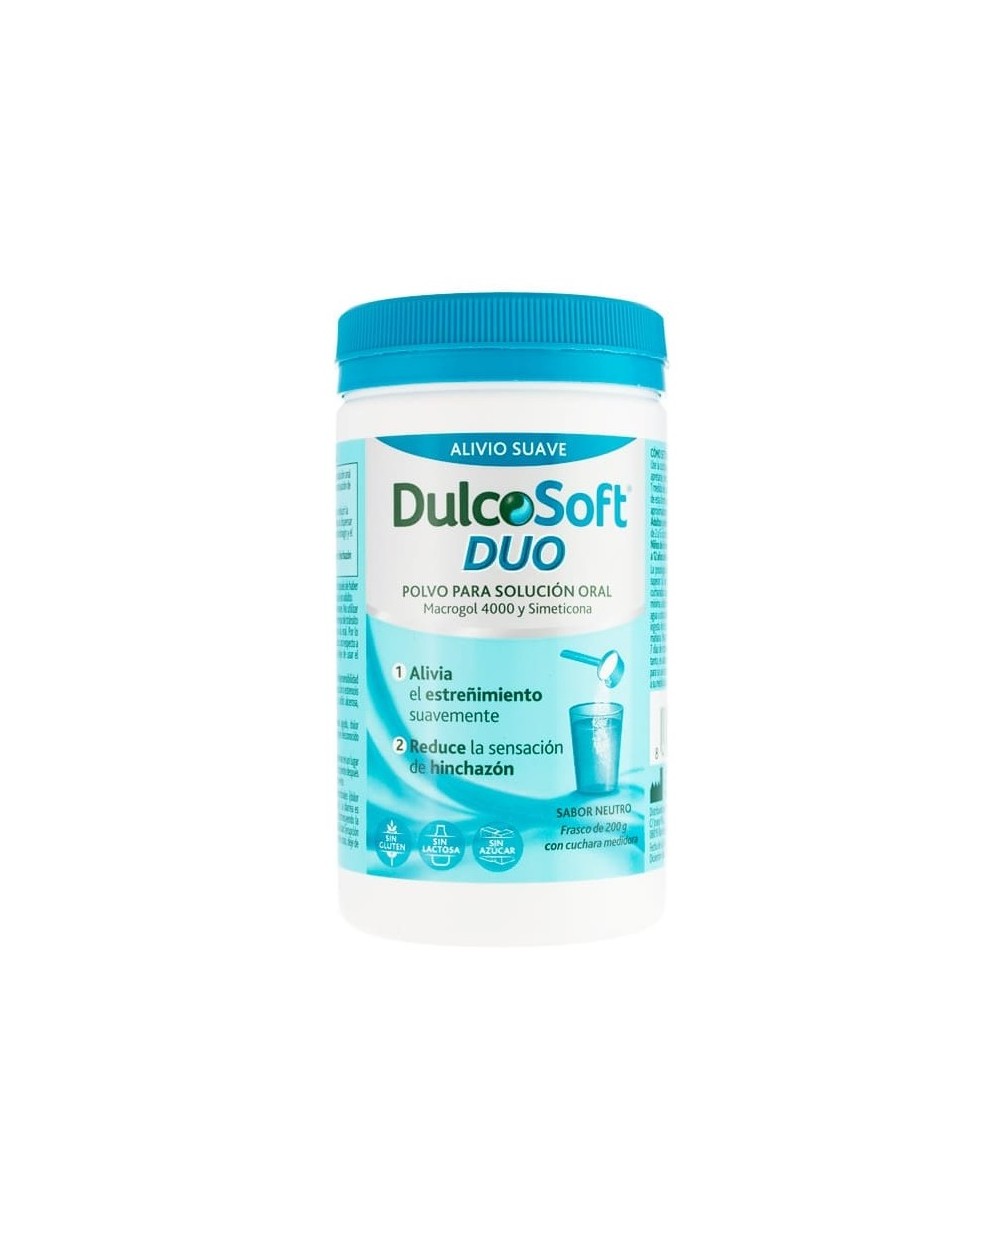 DulcoSoft DUO Polvo para Solución oral Sabor Neutro 200 g